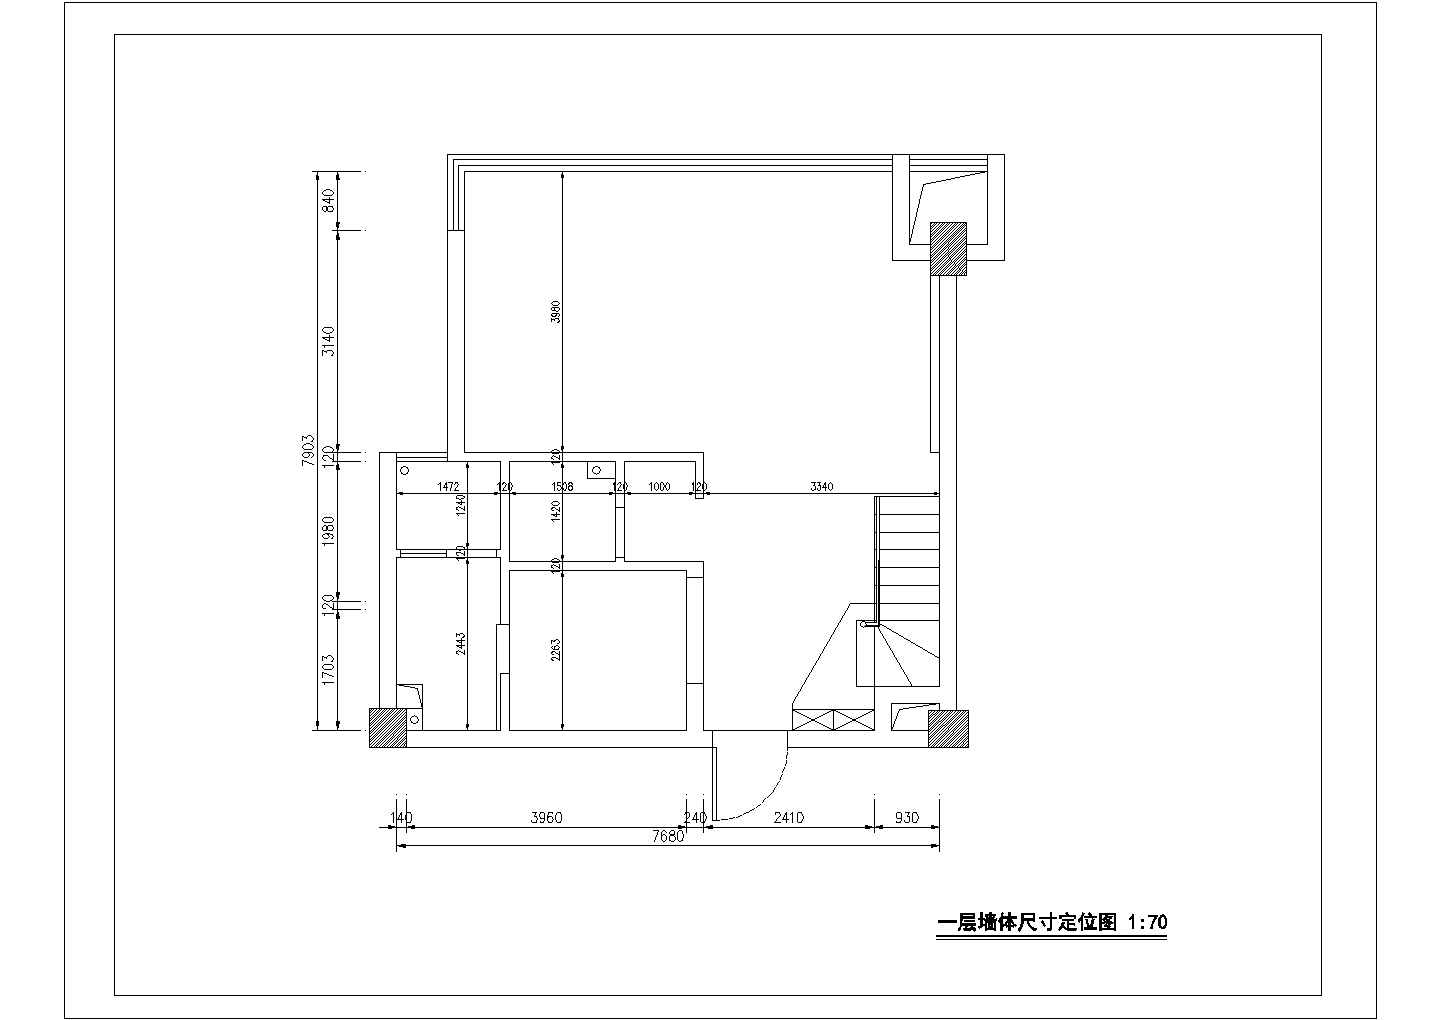 二层欧式别墅装修设计施工图(附实景照片)